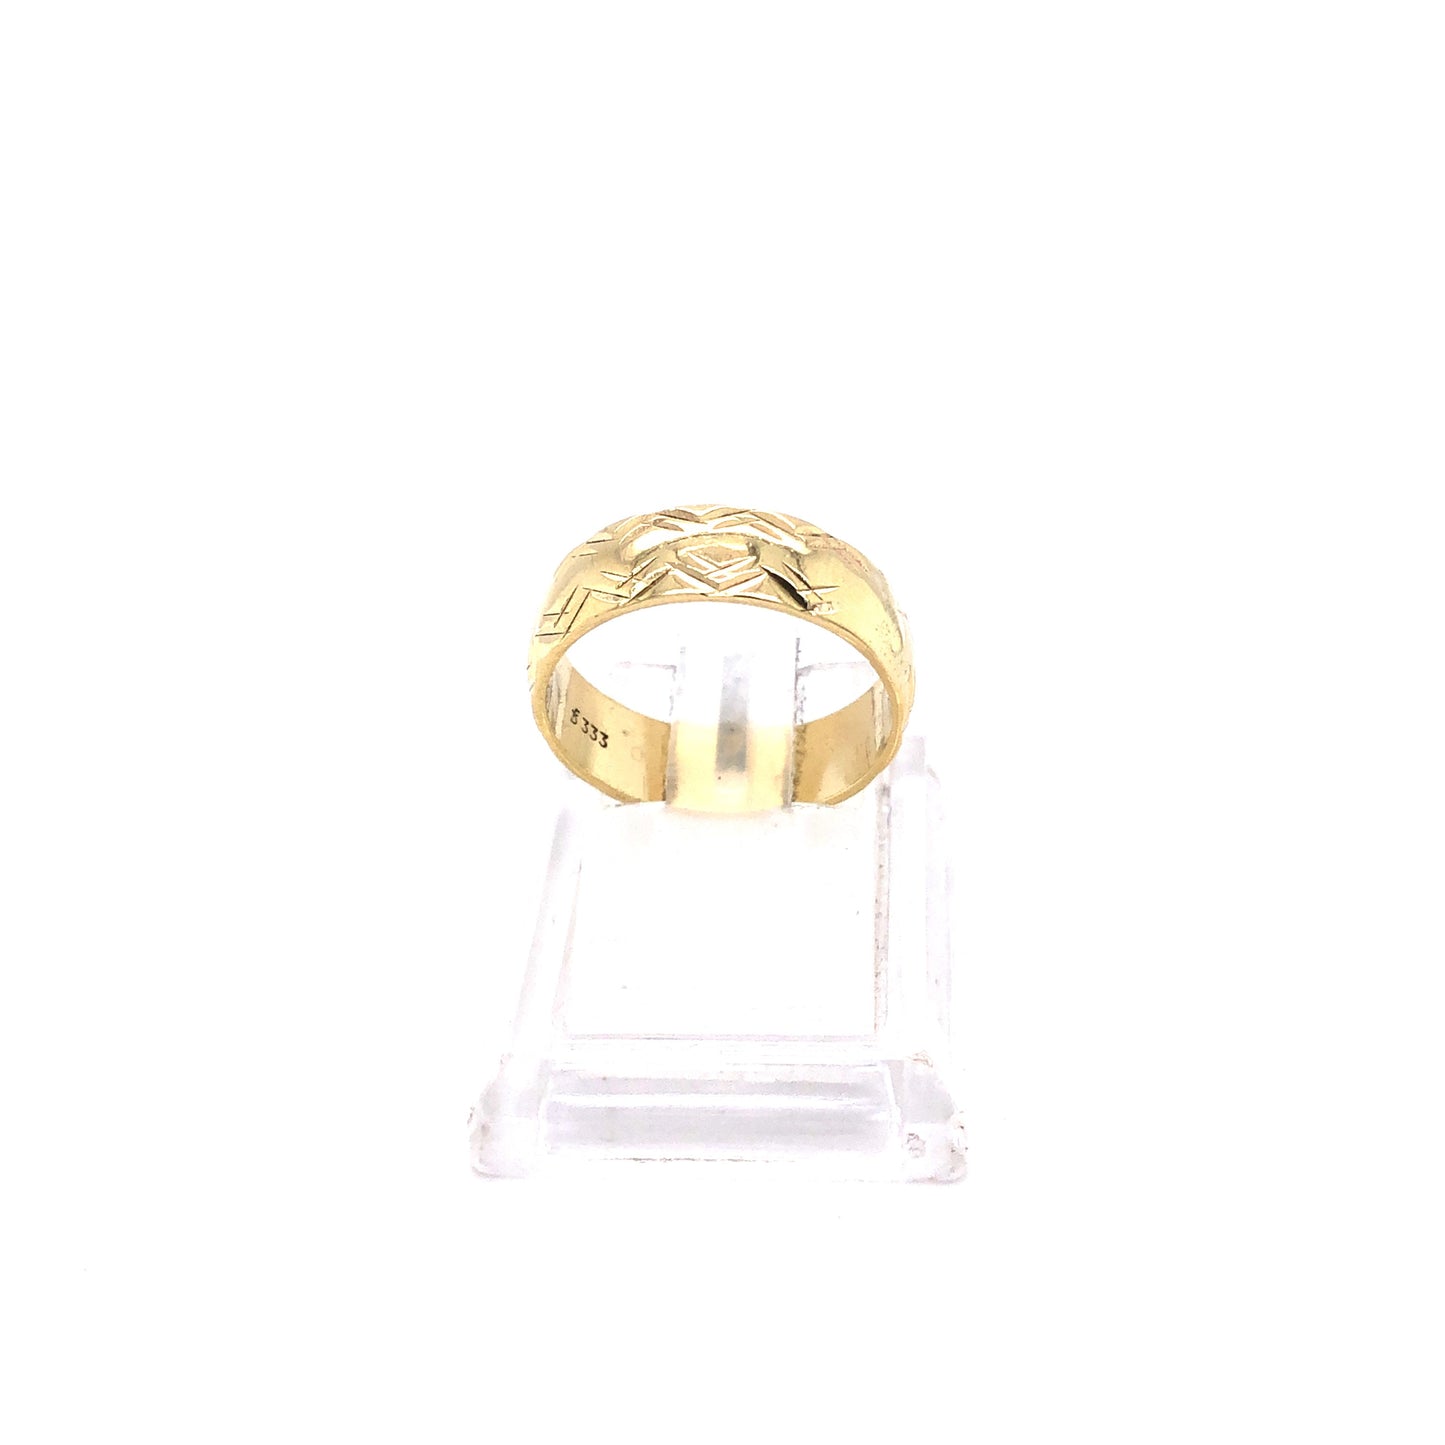 Ring Gold 333 / 8k Gr. 55, gemustert